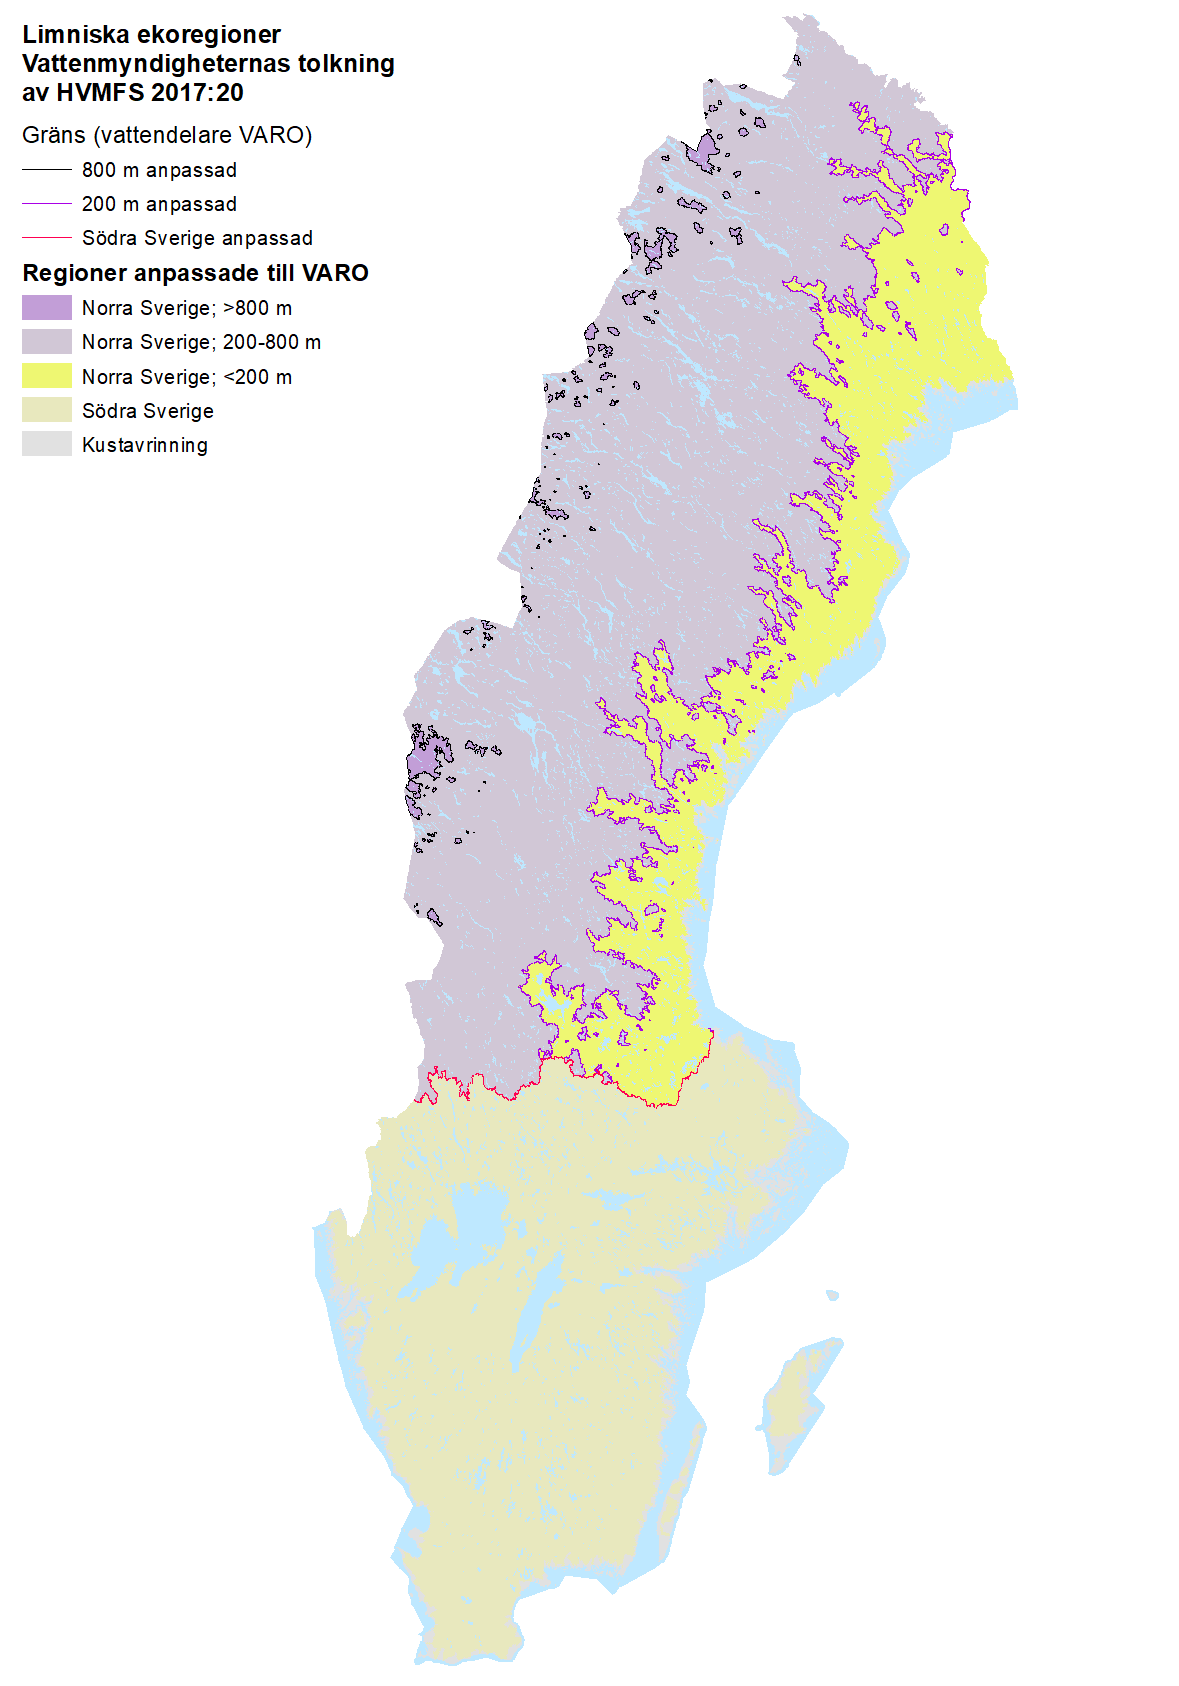 Grafisk presentation av limniska ekoregioner i form av färgade ytor på en Sverigekarta.